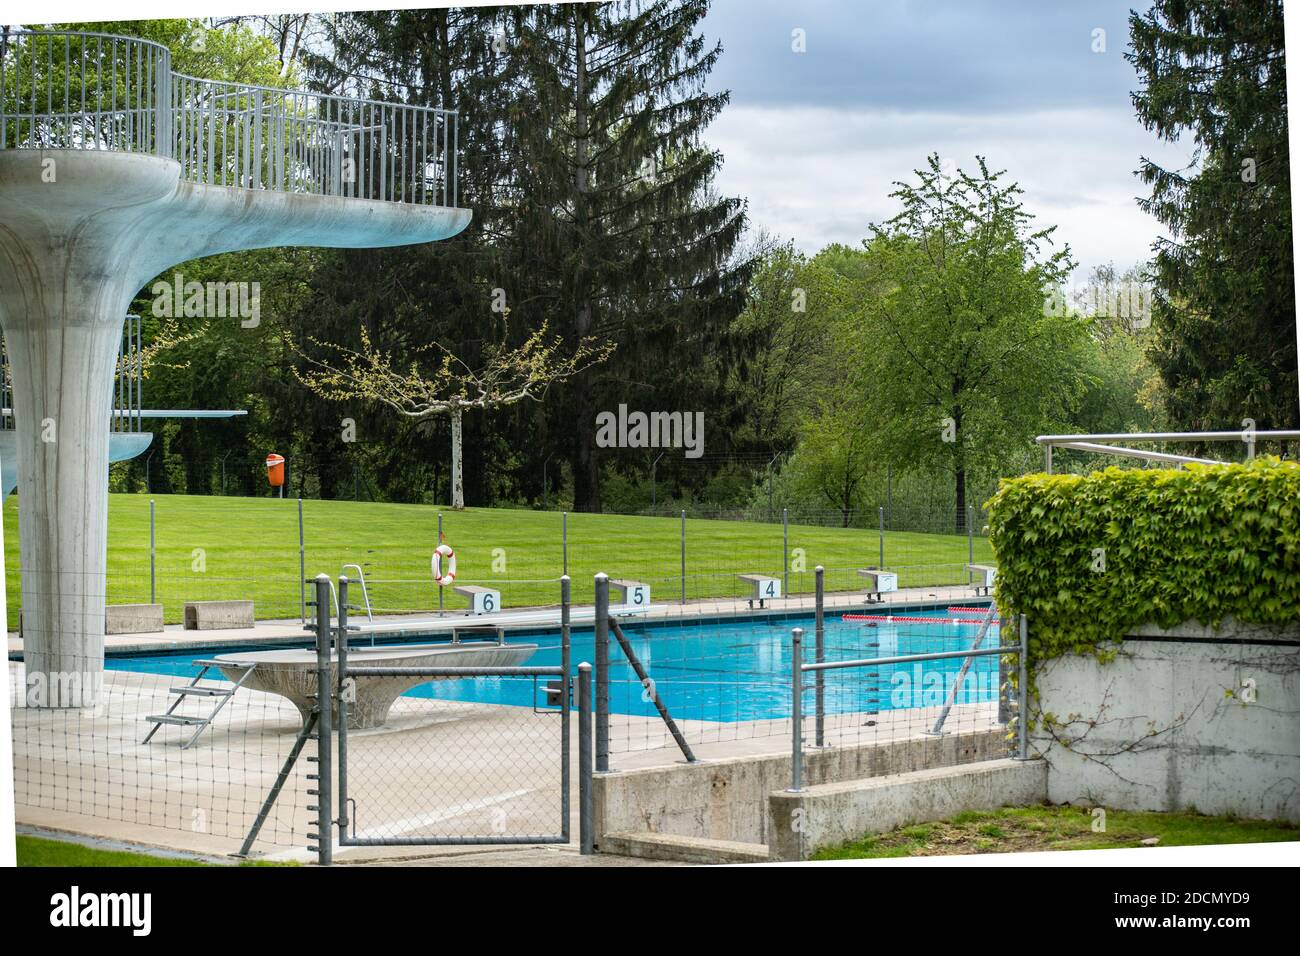 Tour de plongée de la piscine publique de Brugg. Préparation de l'ouverture de la piscine publique de la communauté. Brugg Suisse, 9 mai 2019. Banque D'Images